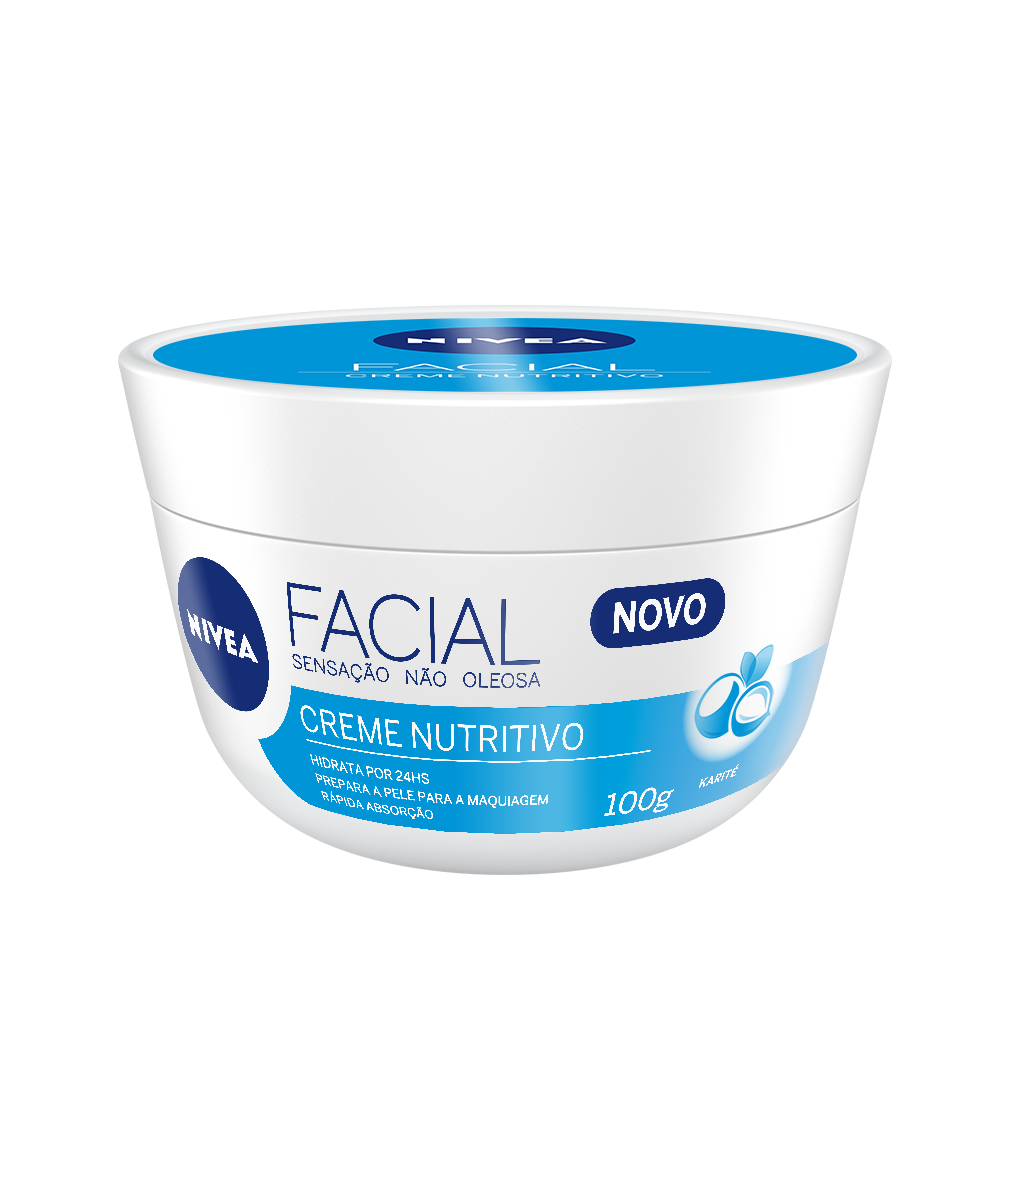 Nivea Facial Nutrition Cream - 100g